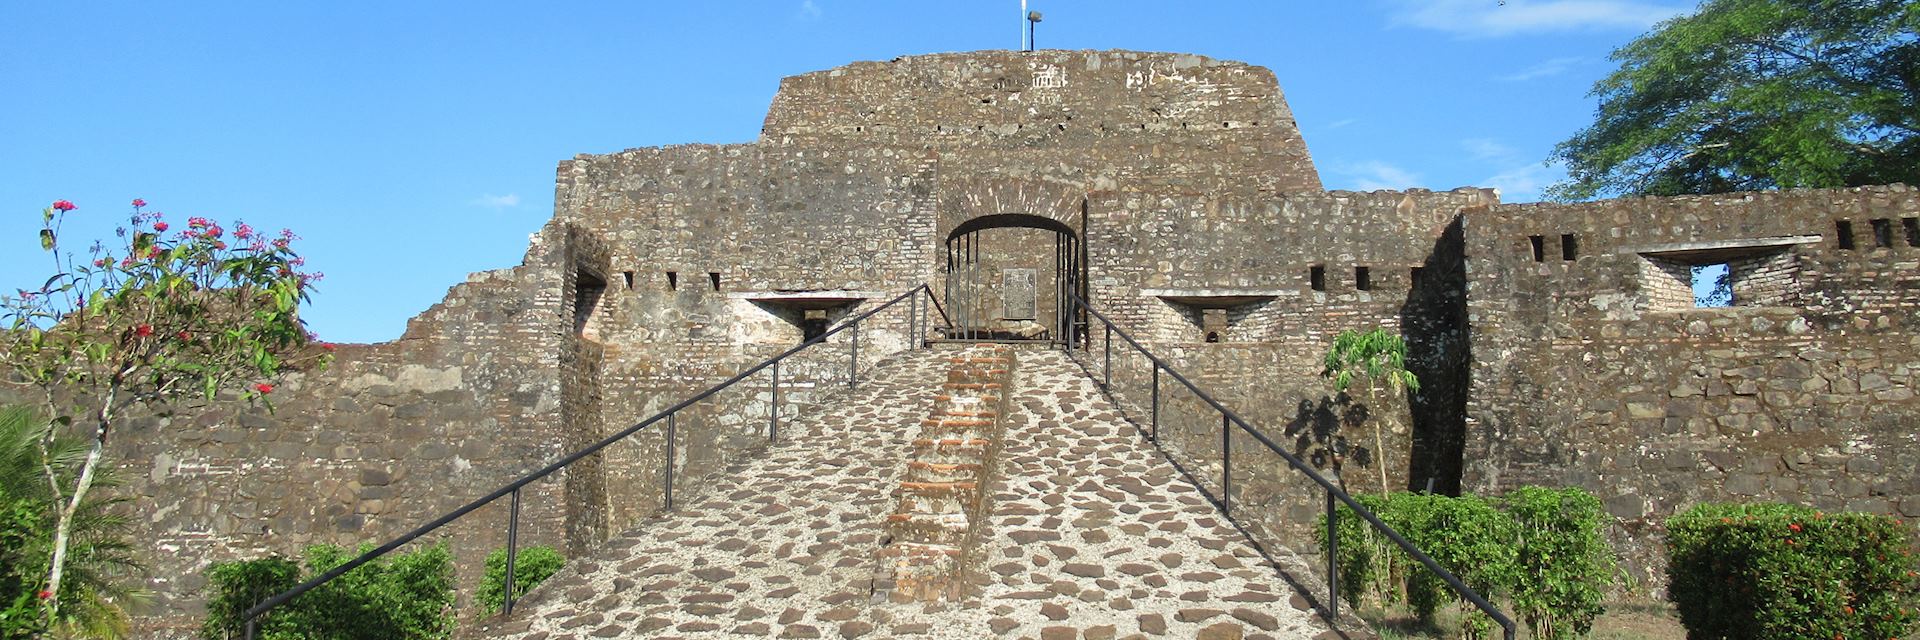 Fortress in El Castillo